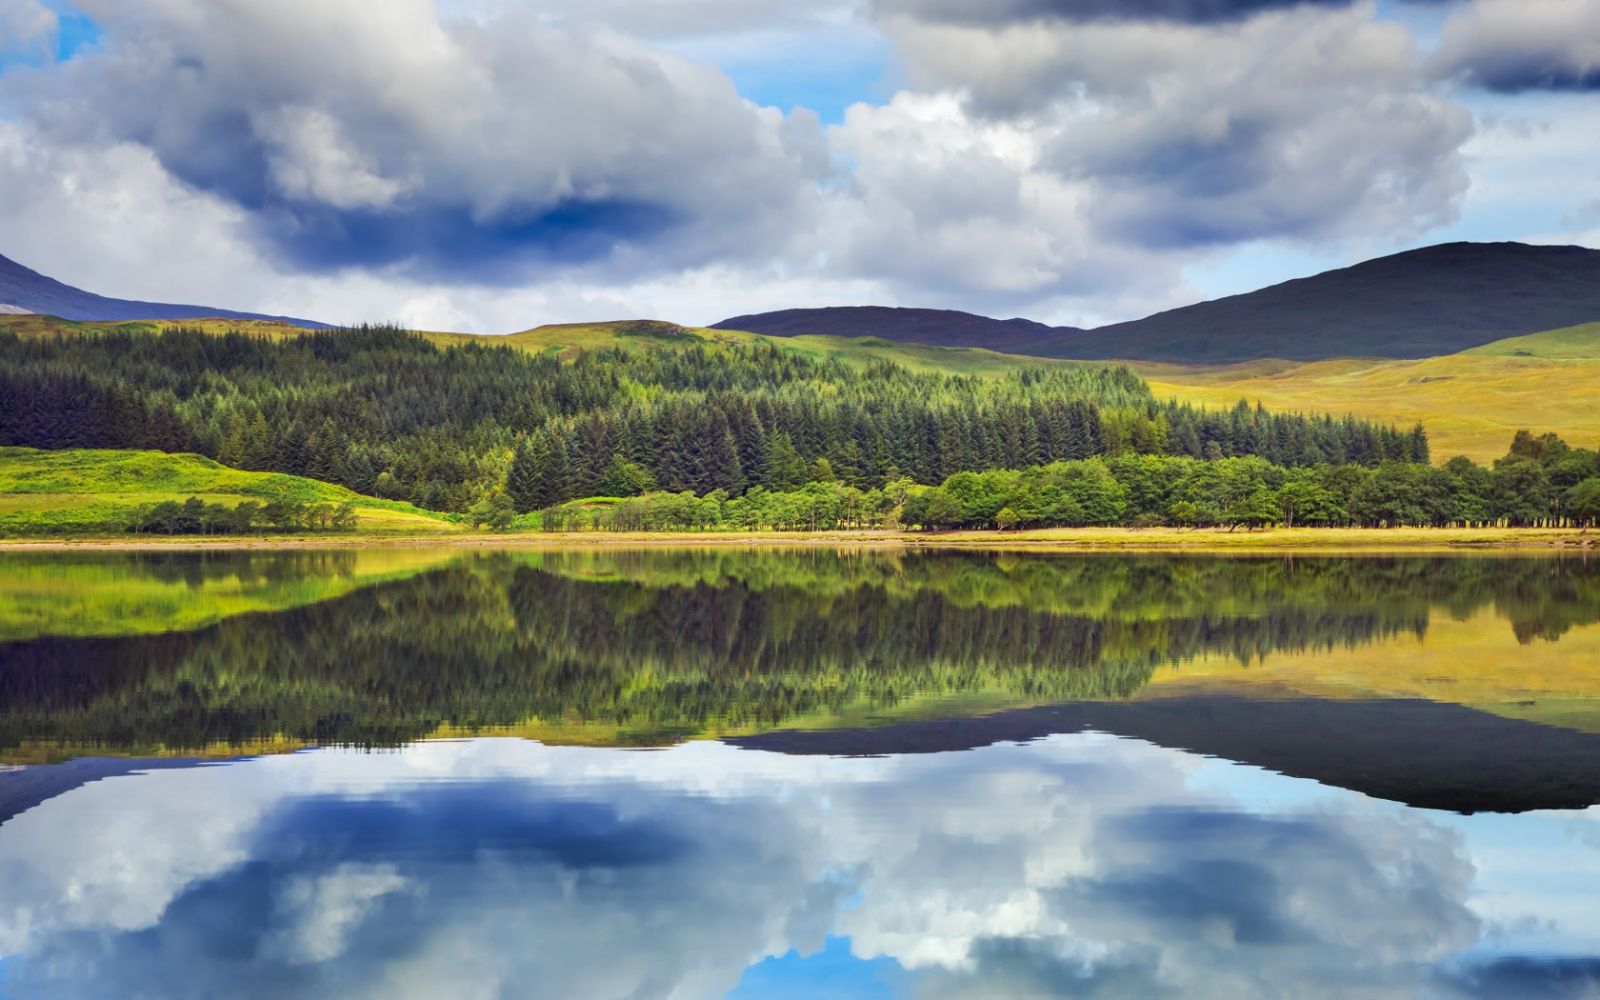 Độc giả của tạp chí Rough Guide đã bình chọn Scotland là đất nước đẹp nhất thế giới bởi những bờ biển hoang sơ, những hồ nước sâu và trong vắt, những lâu đài nằm vắt vẻo trên đỉnh núi cao đầy cổ kính và bí hiểm.